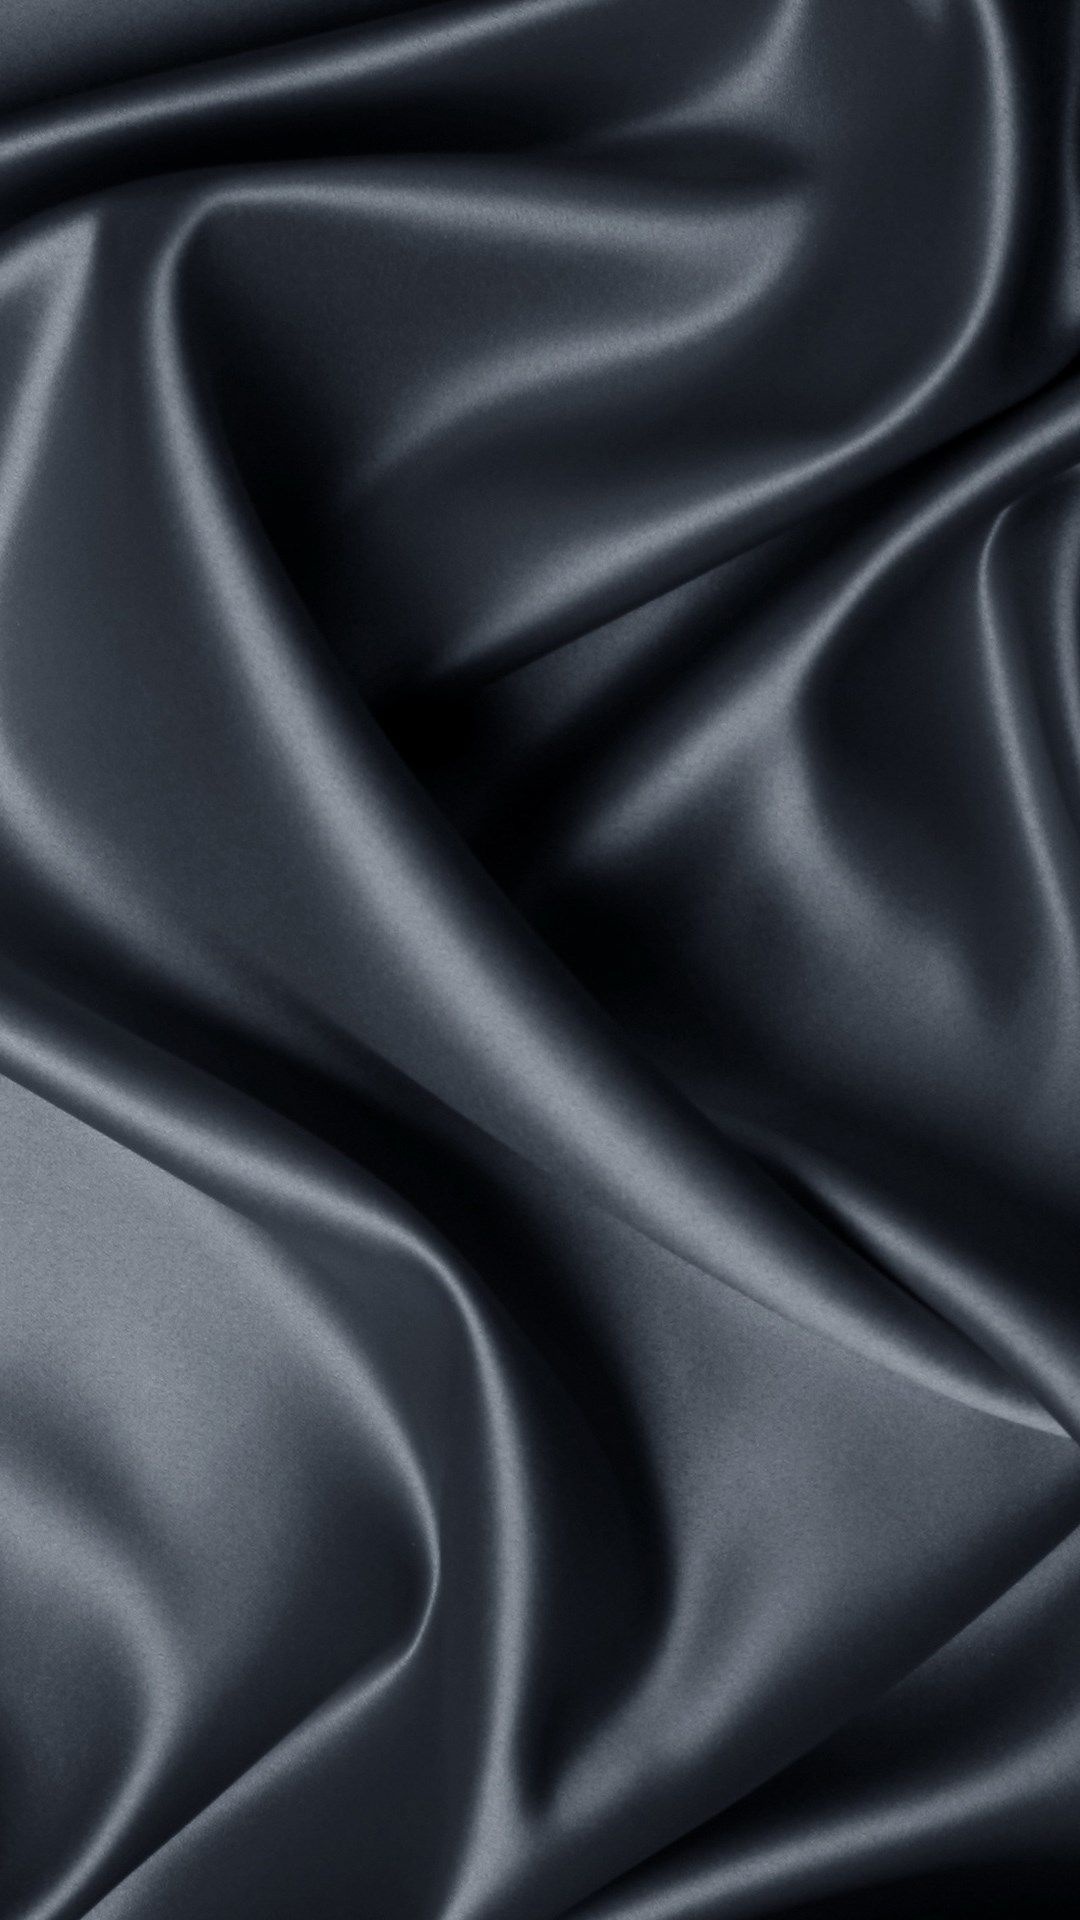 Black silk wallpaper, Minimalist, Elegant, HD, 1080x1920 Full HD Handy